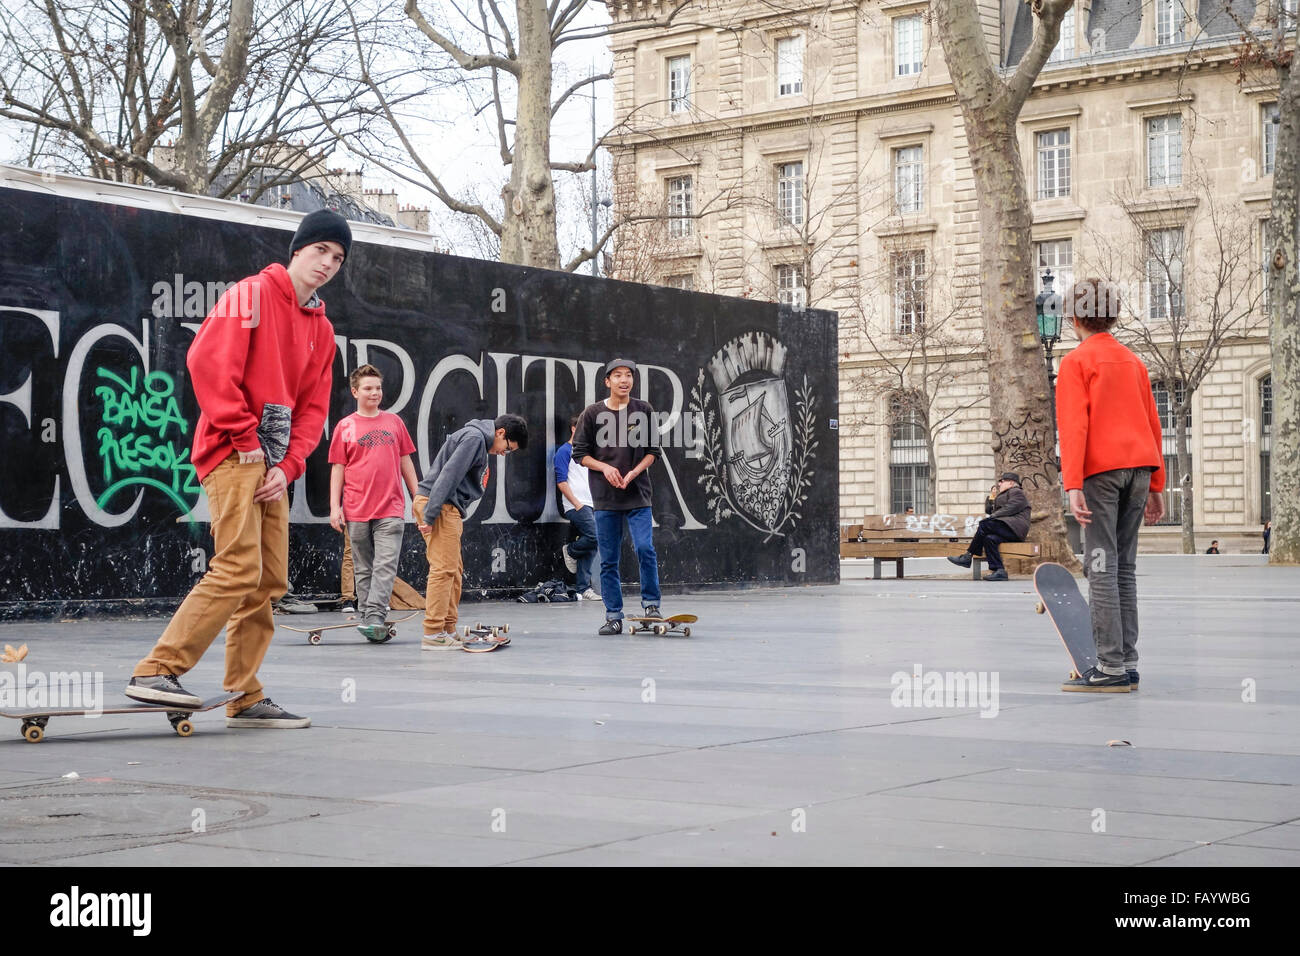 Boys hanging out Skateboarding at Place de la Republique, square, Paris, France. Stock Photo